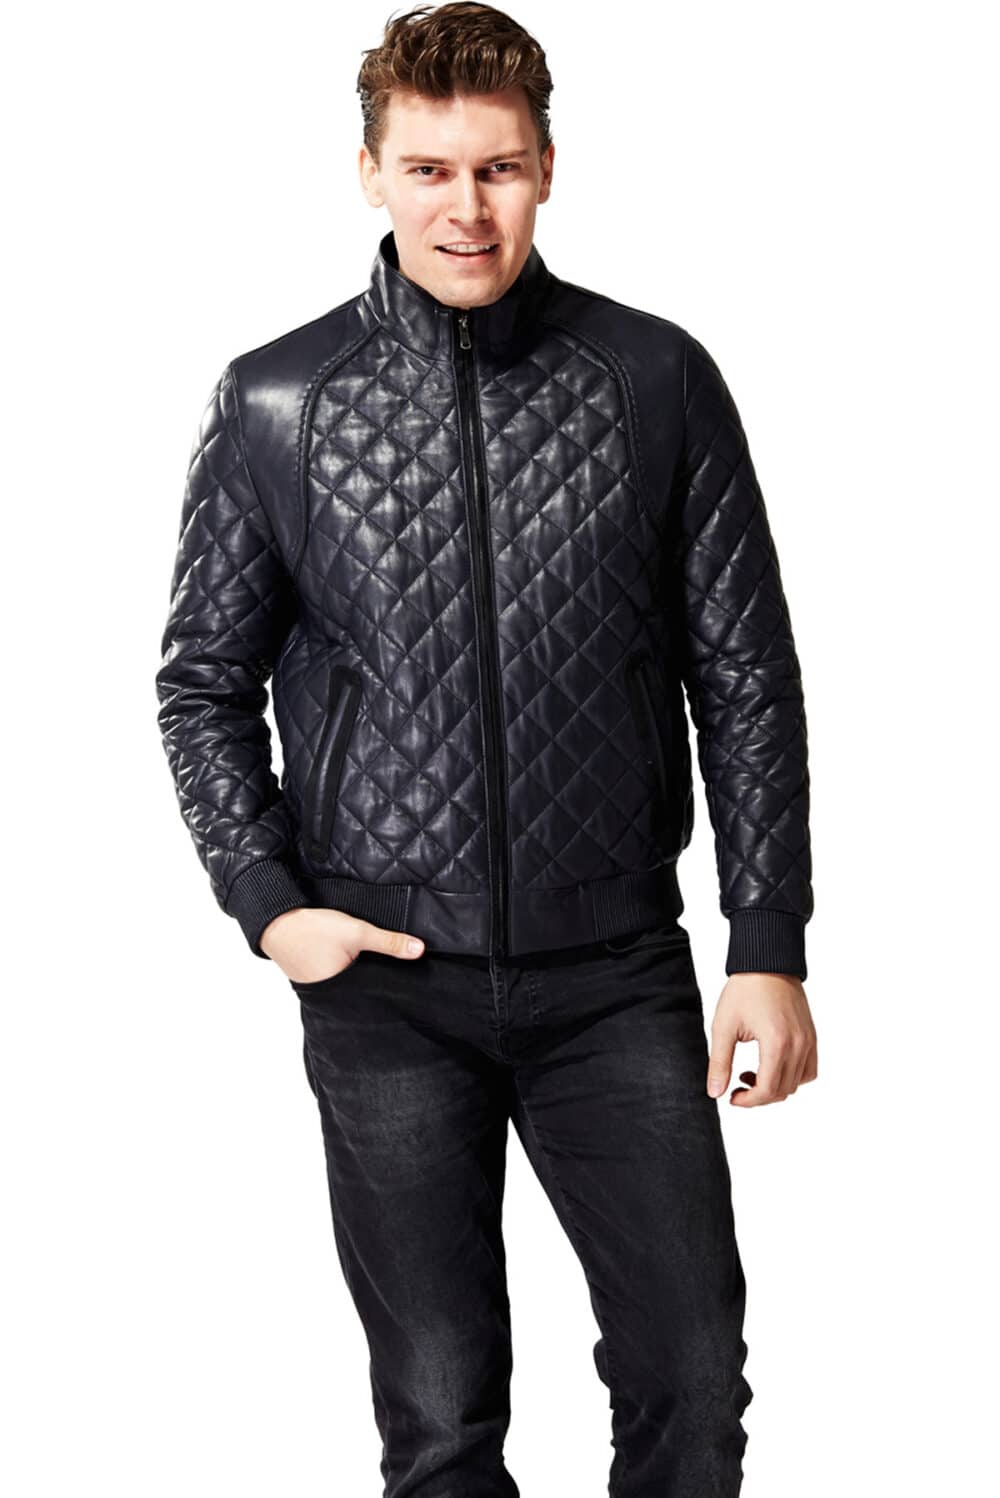 Mens Black Cafe Racer Leather Jacket - Stylish Body Fit Moto Jacket